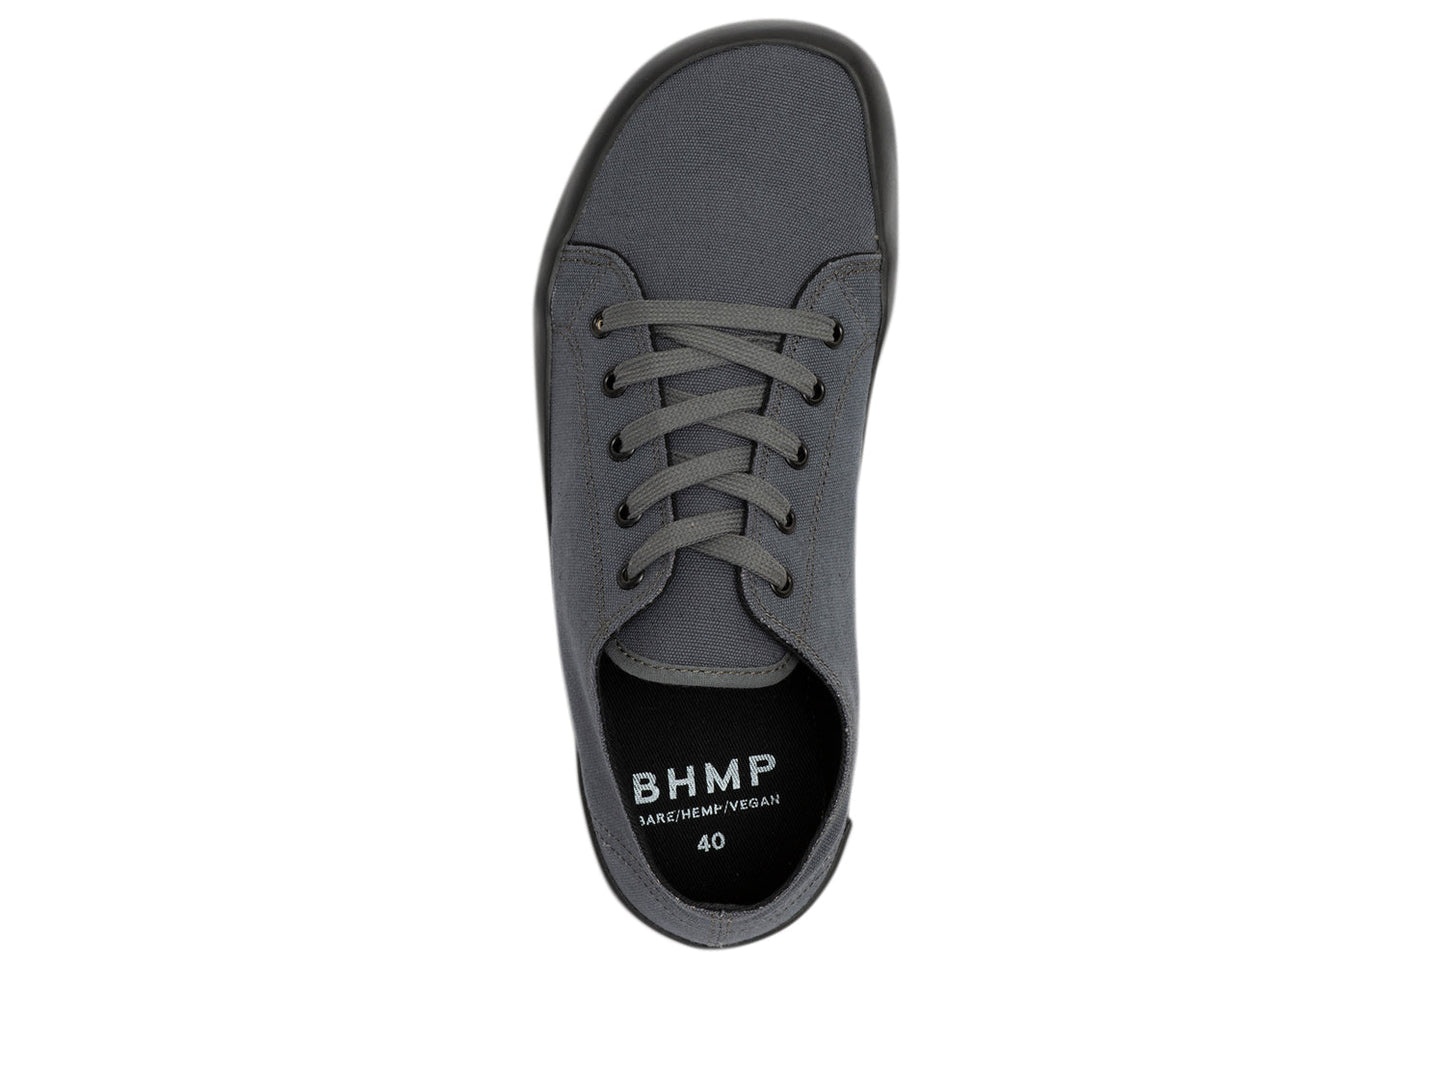 Bohempia Hoska 2.0 barfods sneaker til kvinder og mænd i farven dark gray-black, top